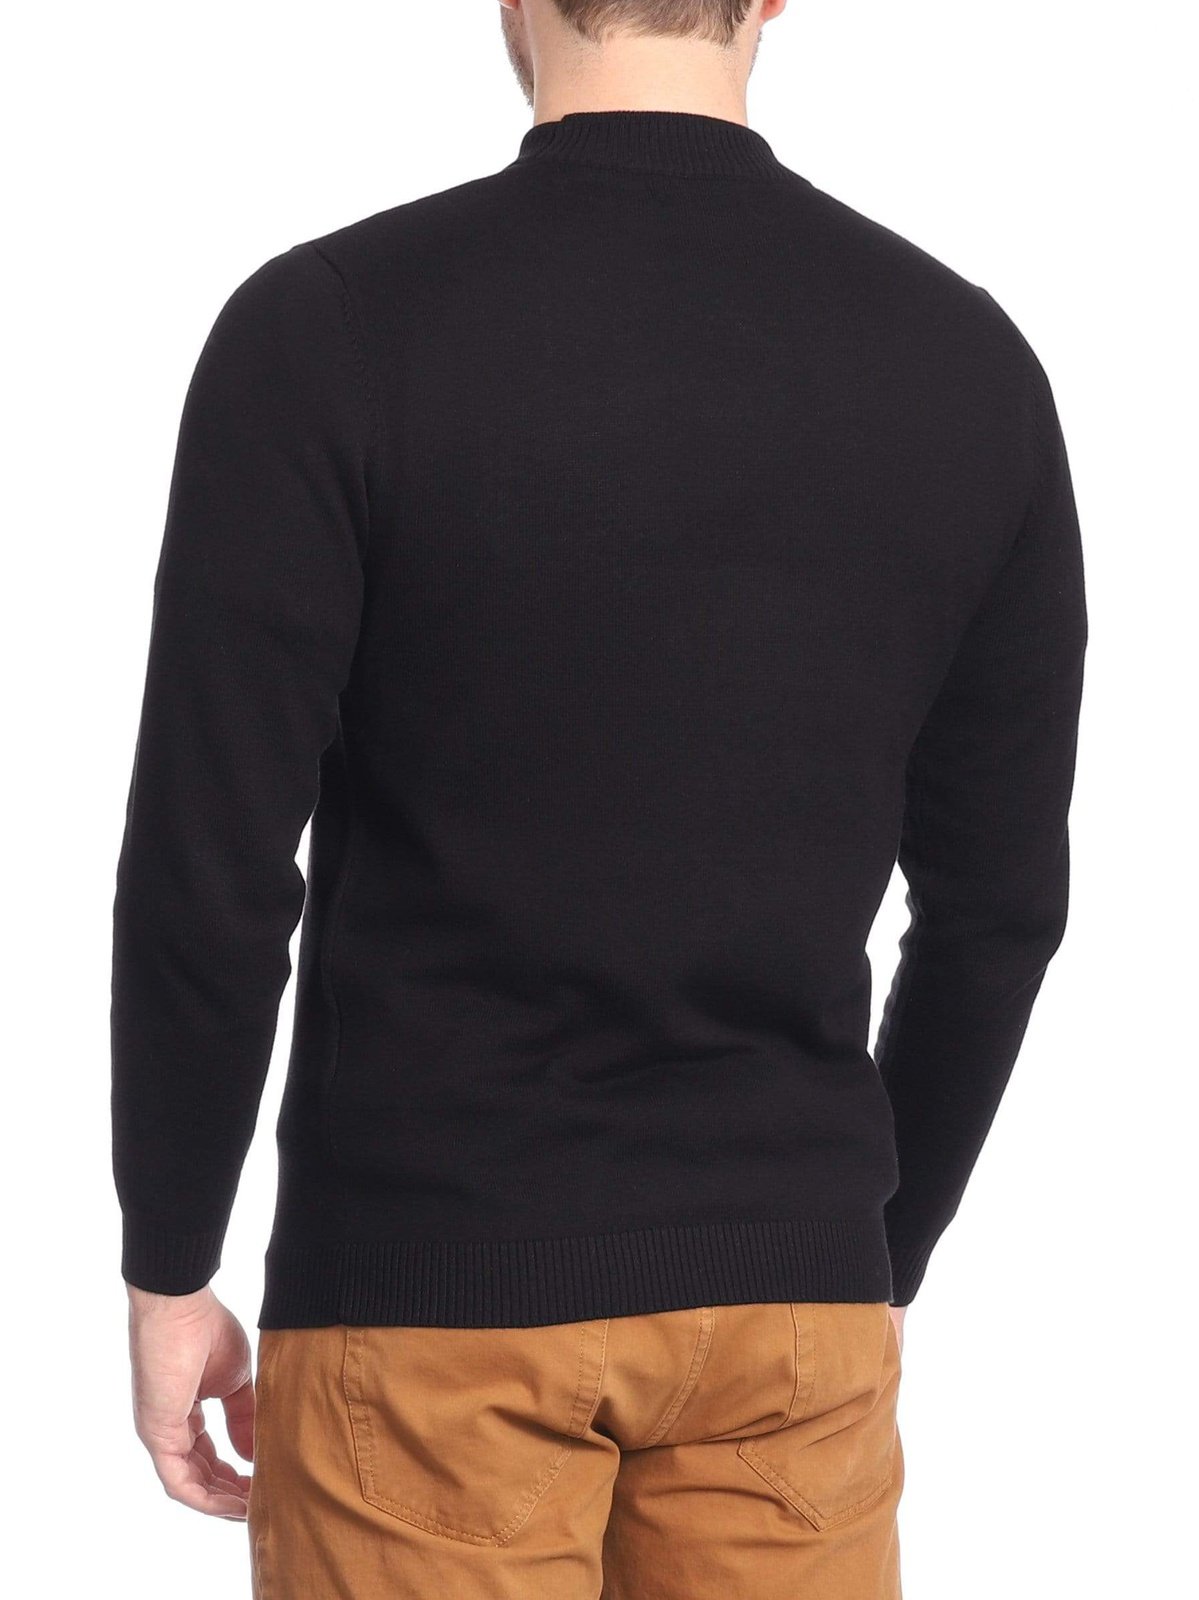 Arthur Black Default Category Migrated Arthur Black Men's Solid Black Pullover Cotton Blend Mock Neck Sweater Shirt